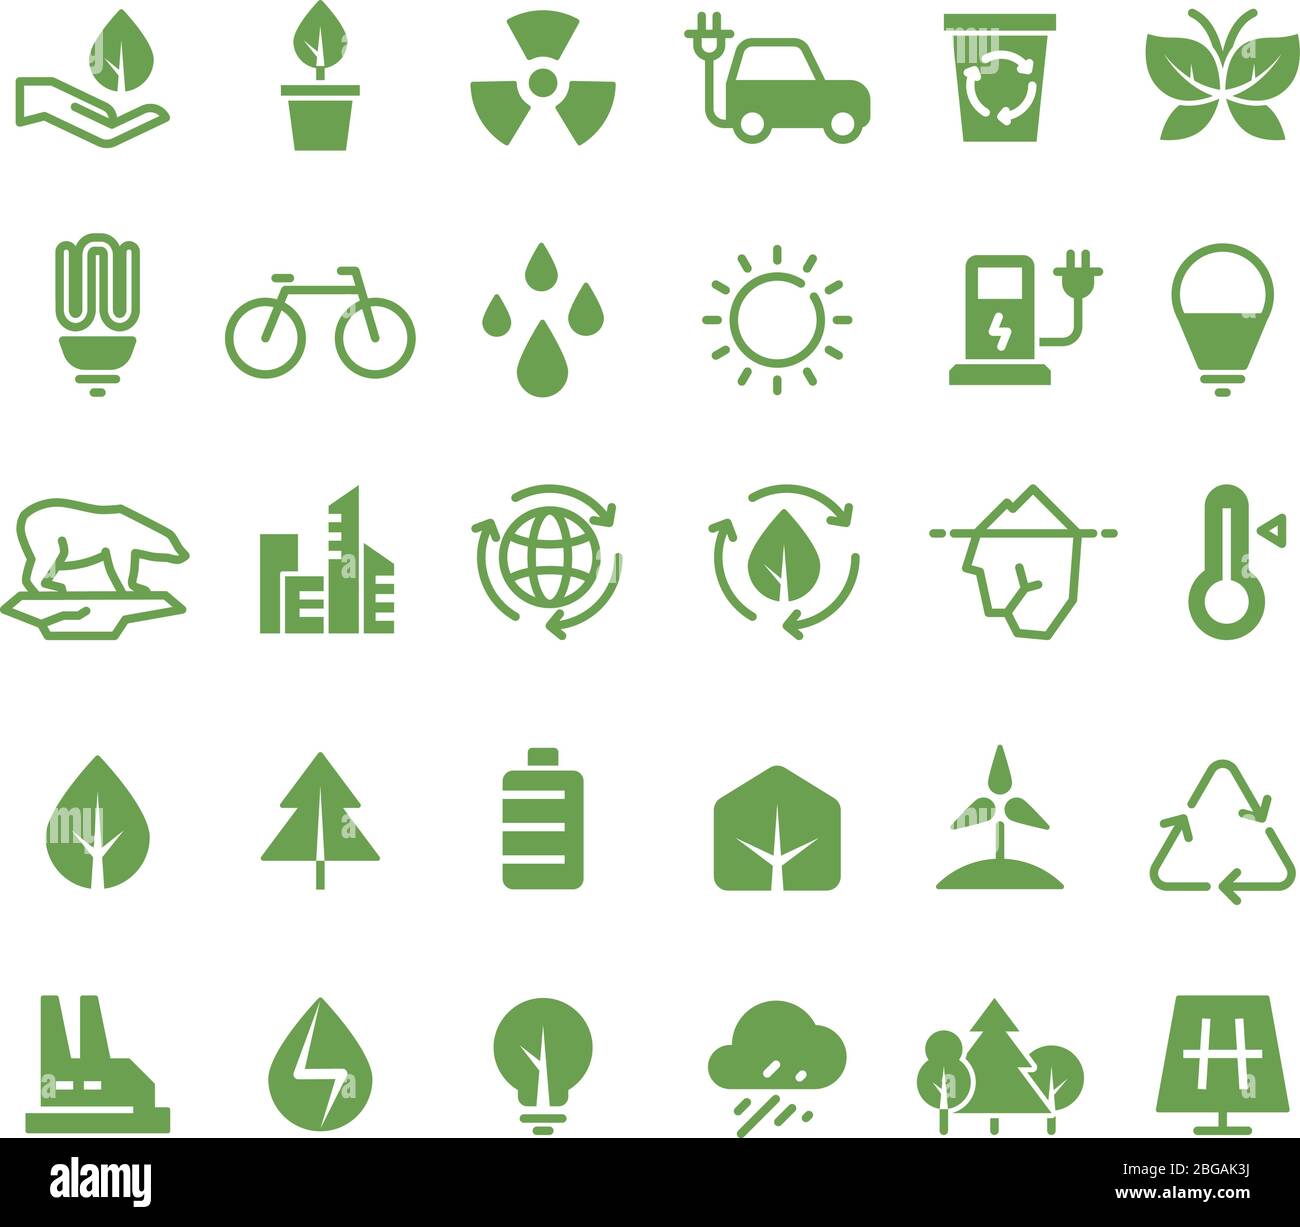 Icone verdi dei vettori ecologici. Pittogrammi sull'ambiente pulito, sul processo di riciclaggio e sulle energie rinnovabili. Energia verde, ecologia e ambiente Illustrazione Vettoriale